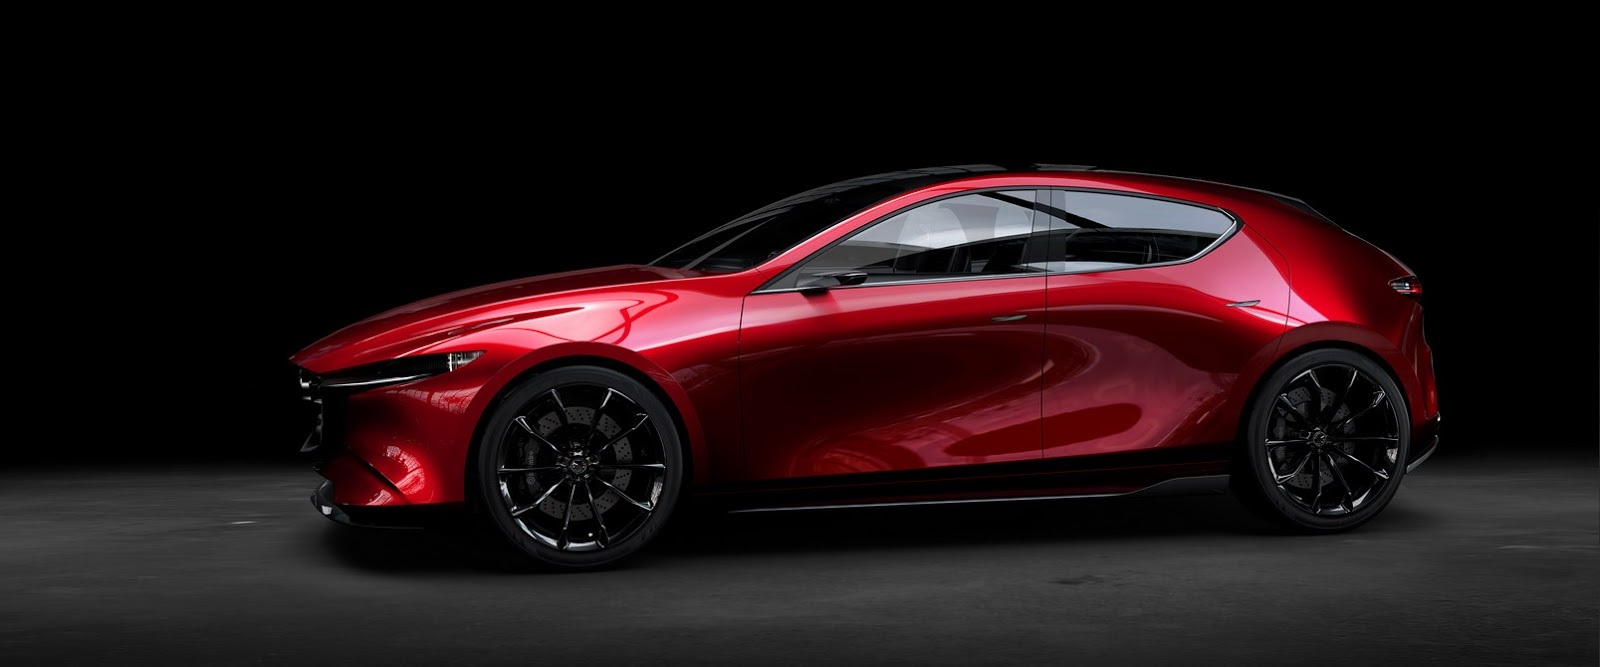 Mazda-Kai-Concept-143.jpg